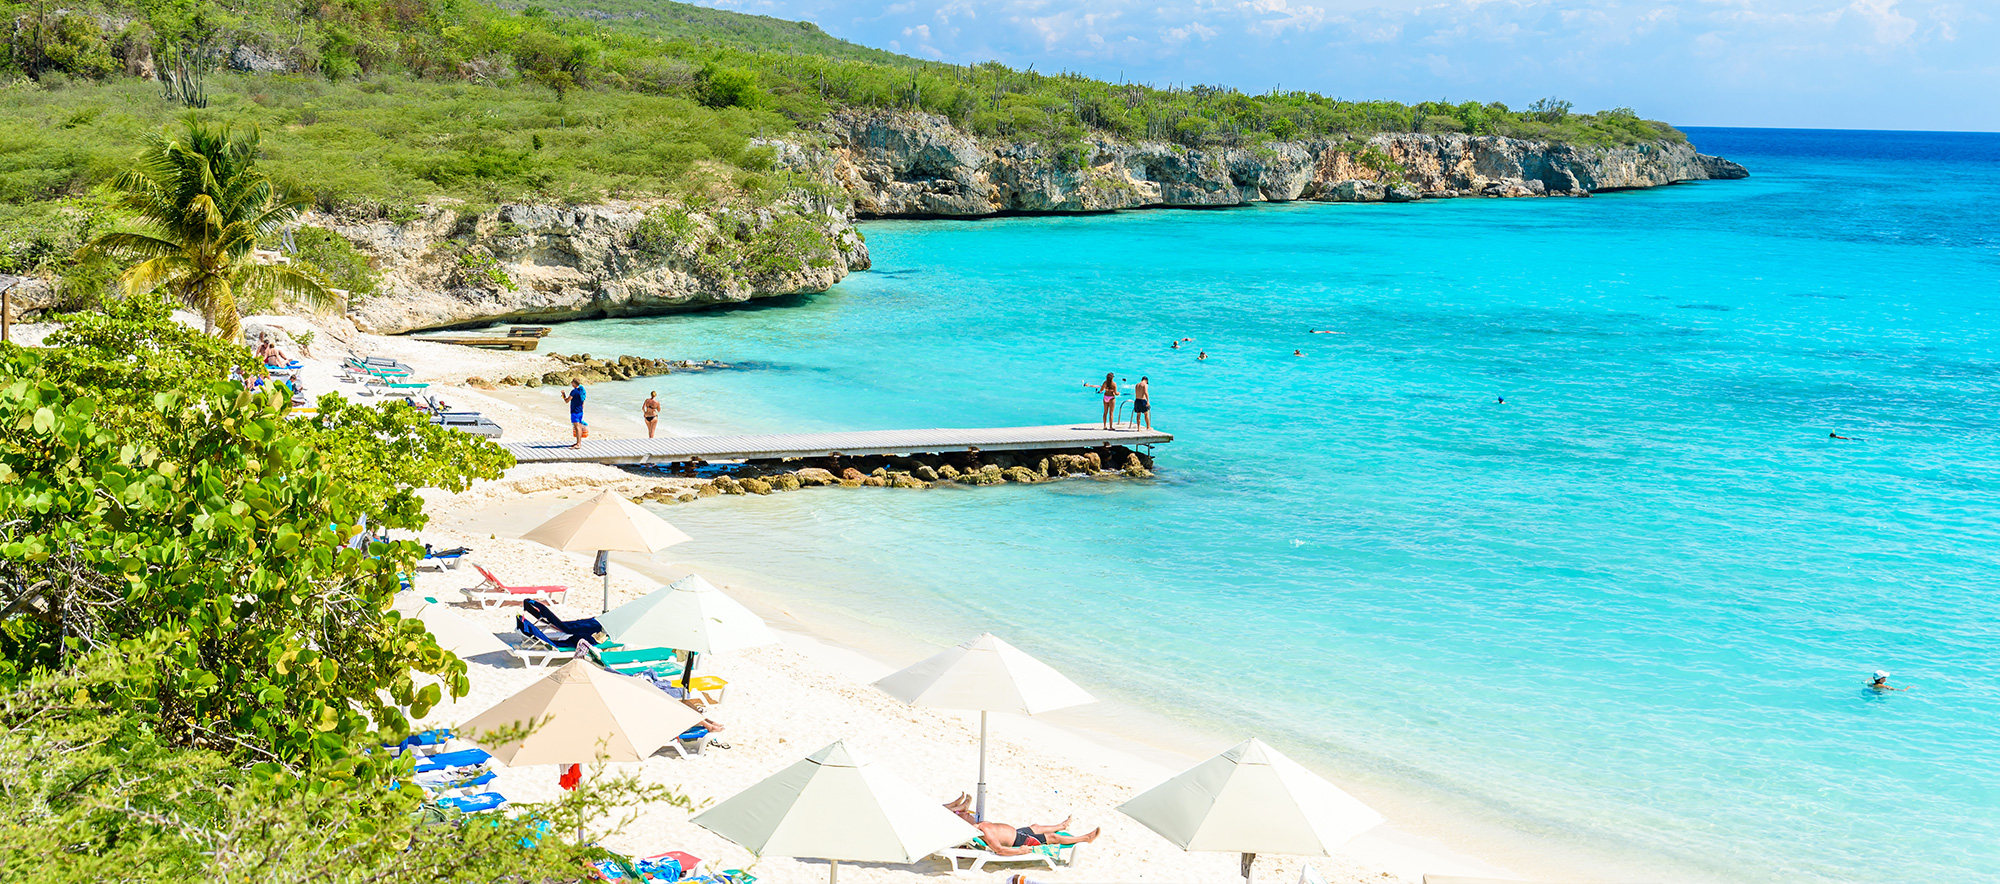 Vakantie Curaçao? Scoor de beste deal bij D-reizen!